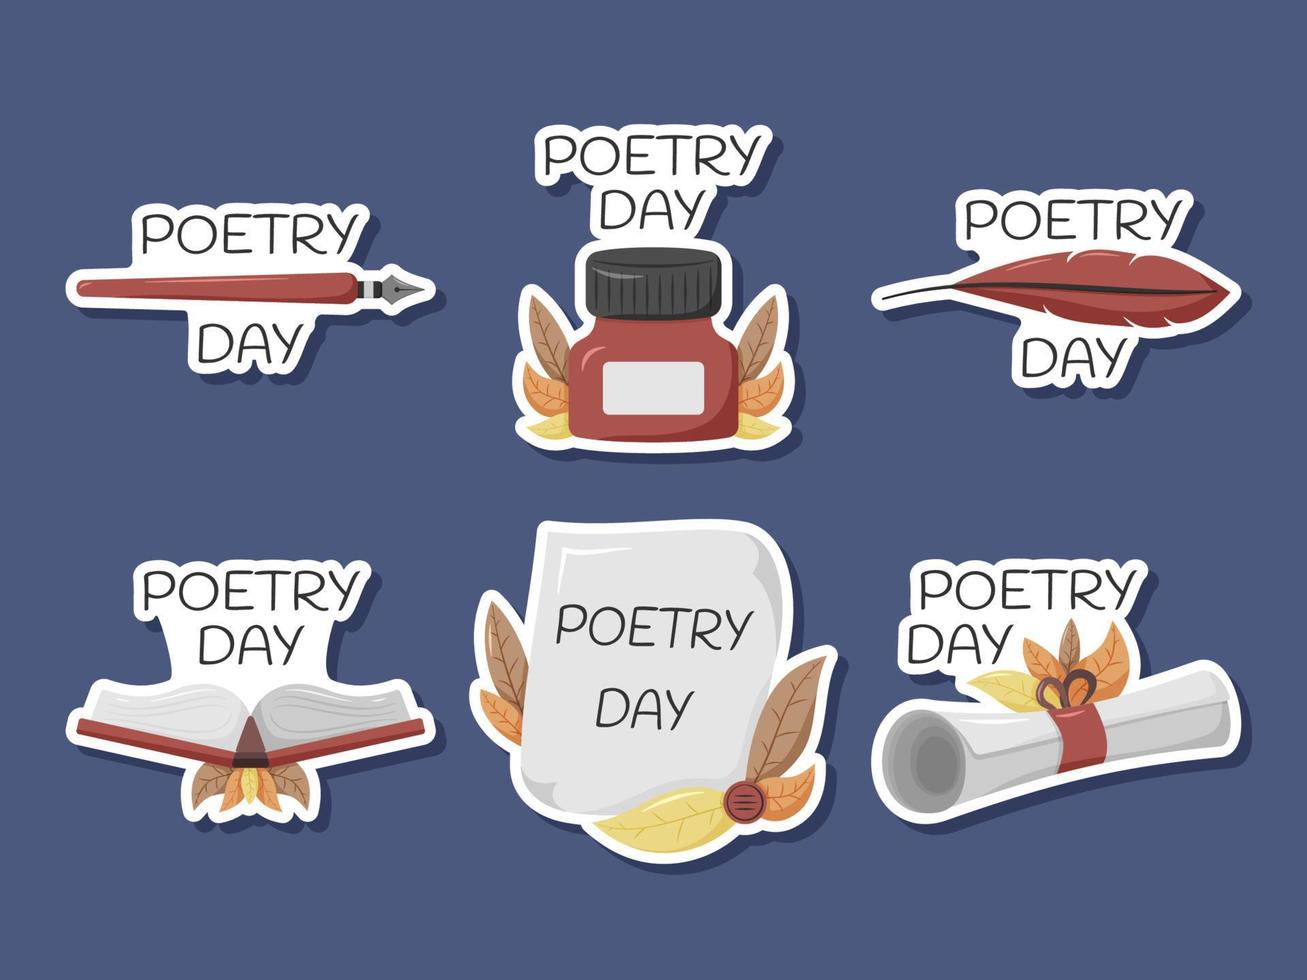 conjunto de adesivos do dia mundial da poesia vetor